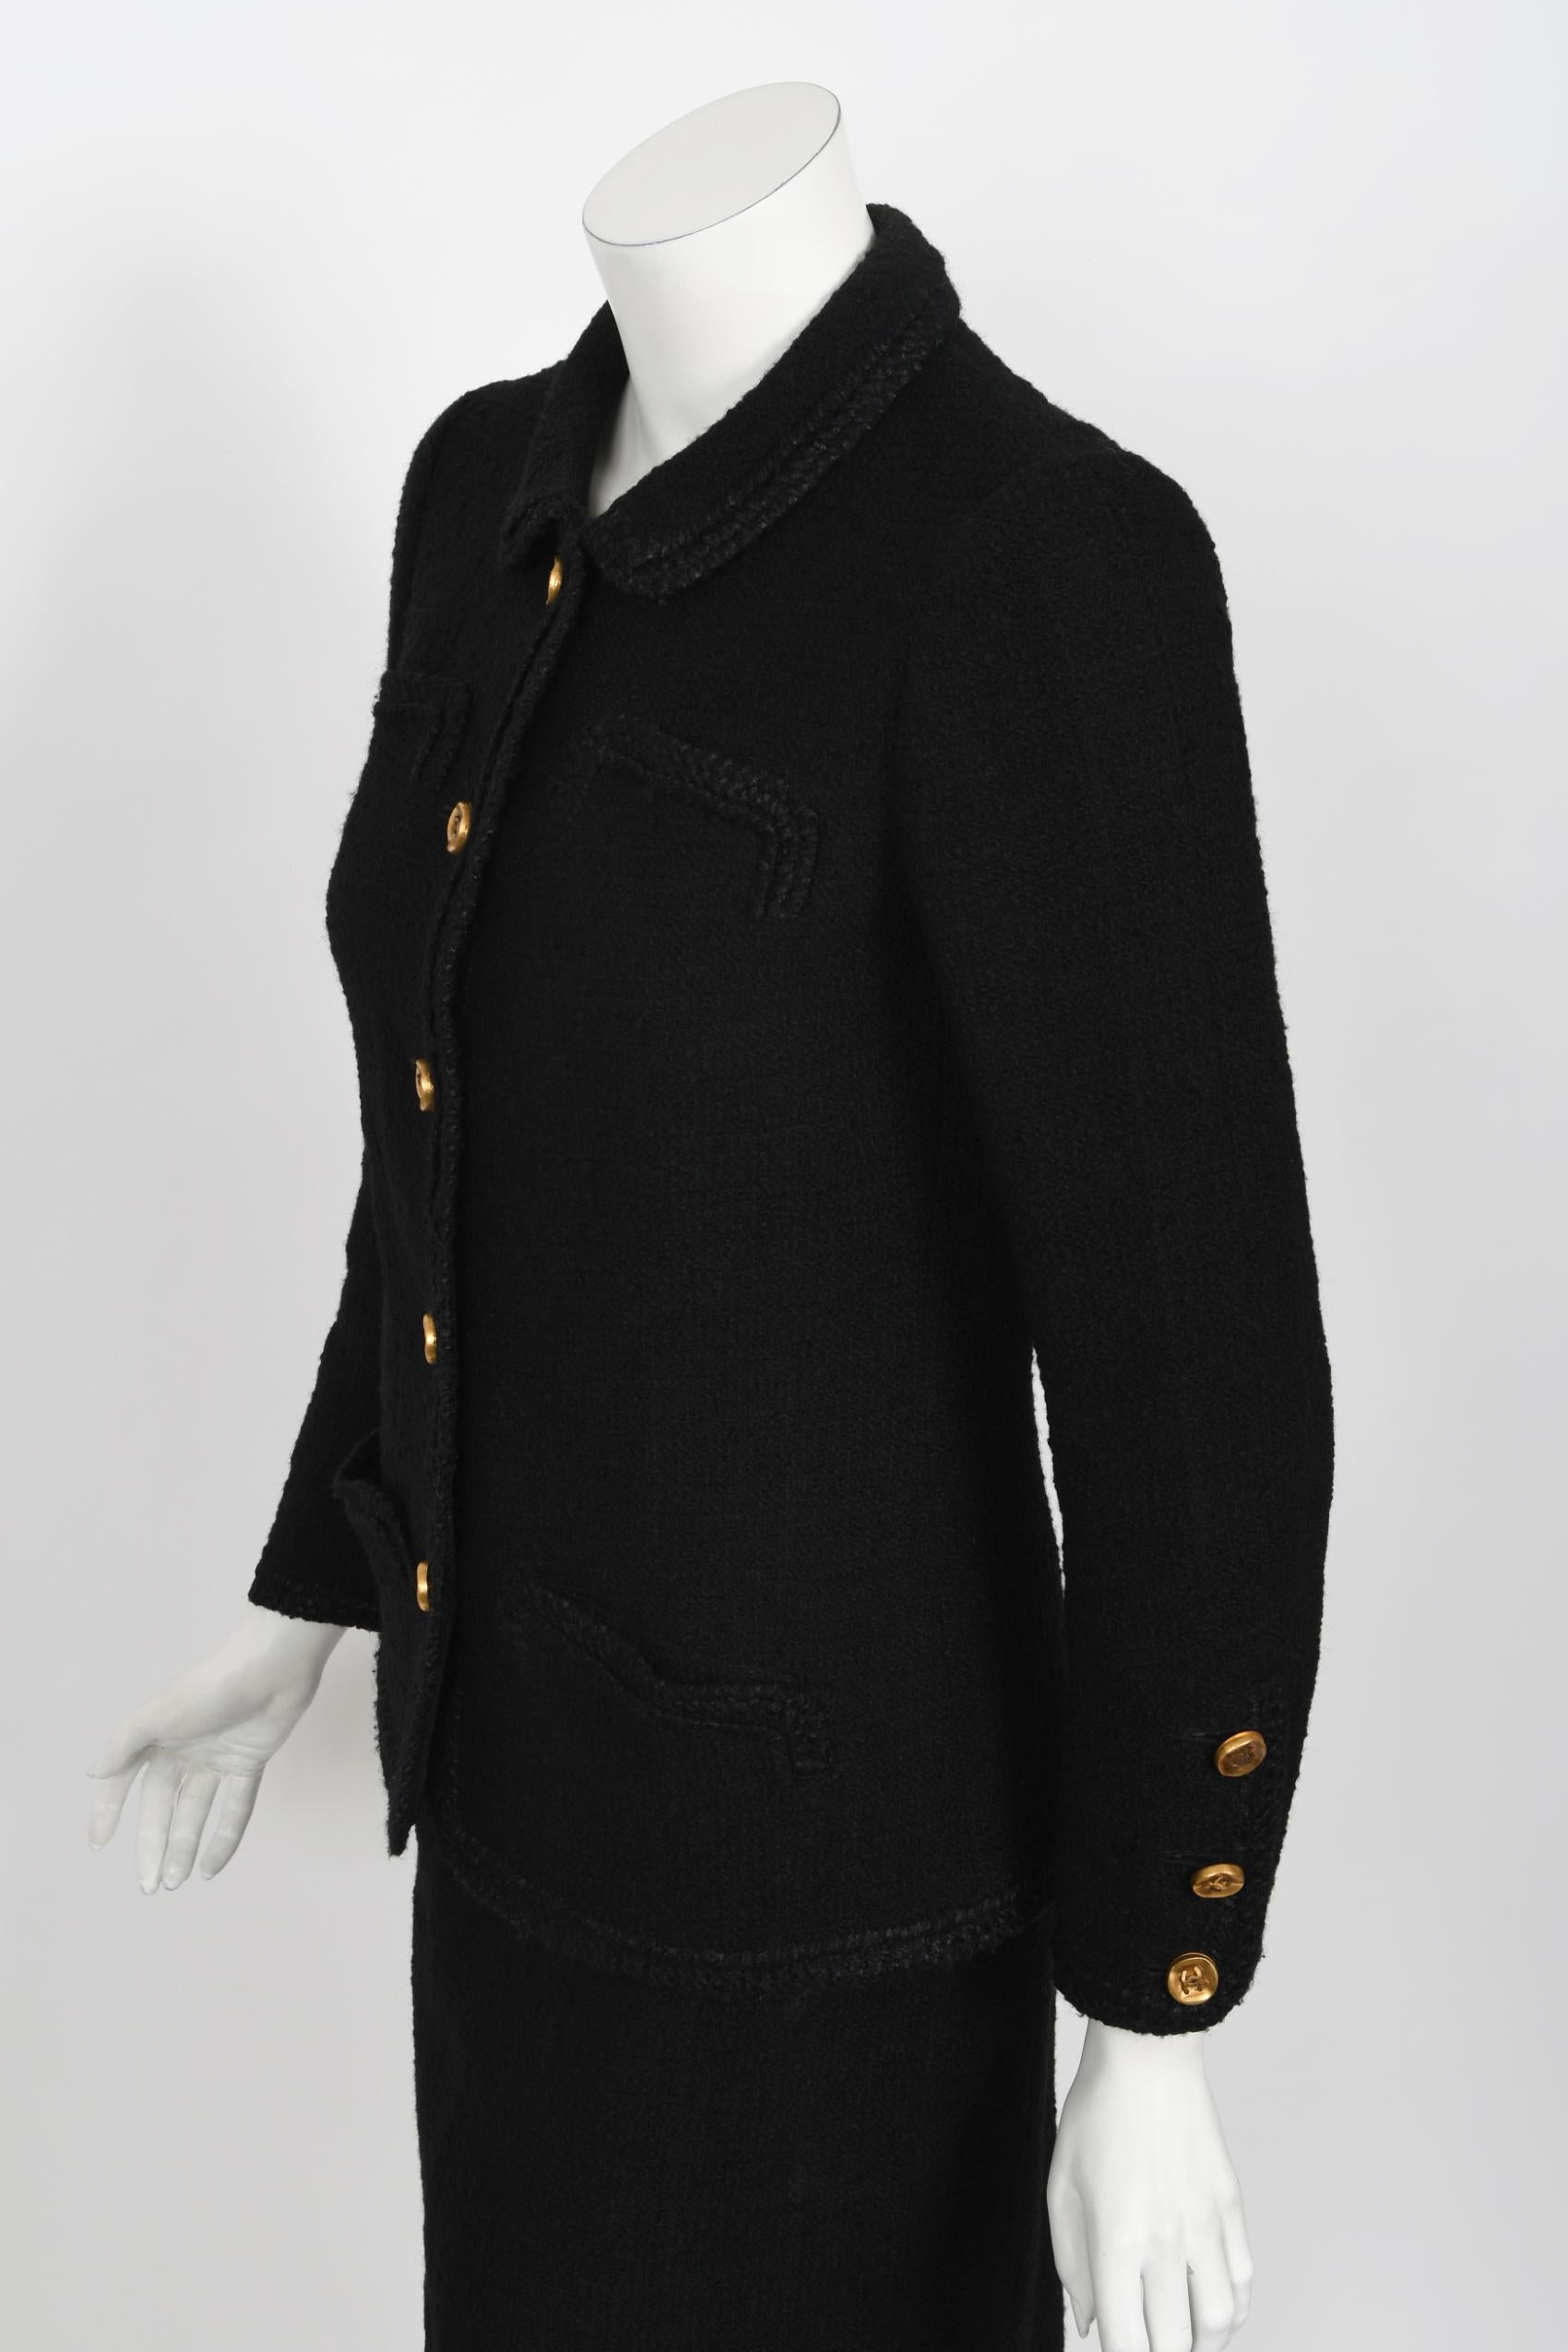 Vintage 1973 Chanel Haute Couture Black Boucle Wool Logo Buttons Jacket Suit  5